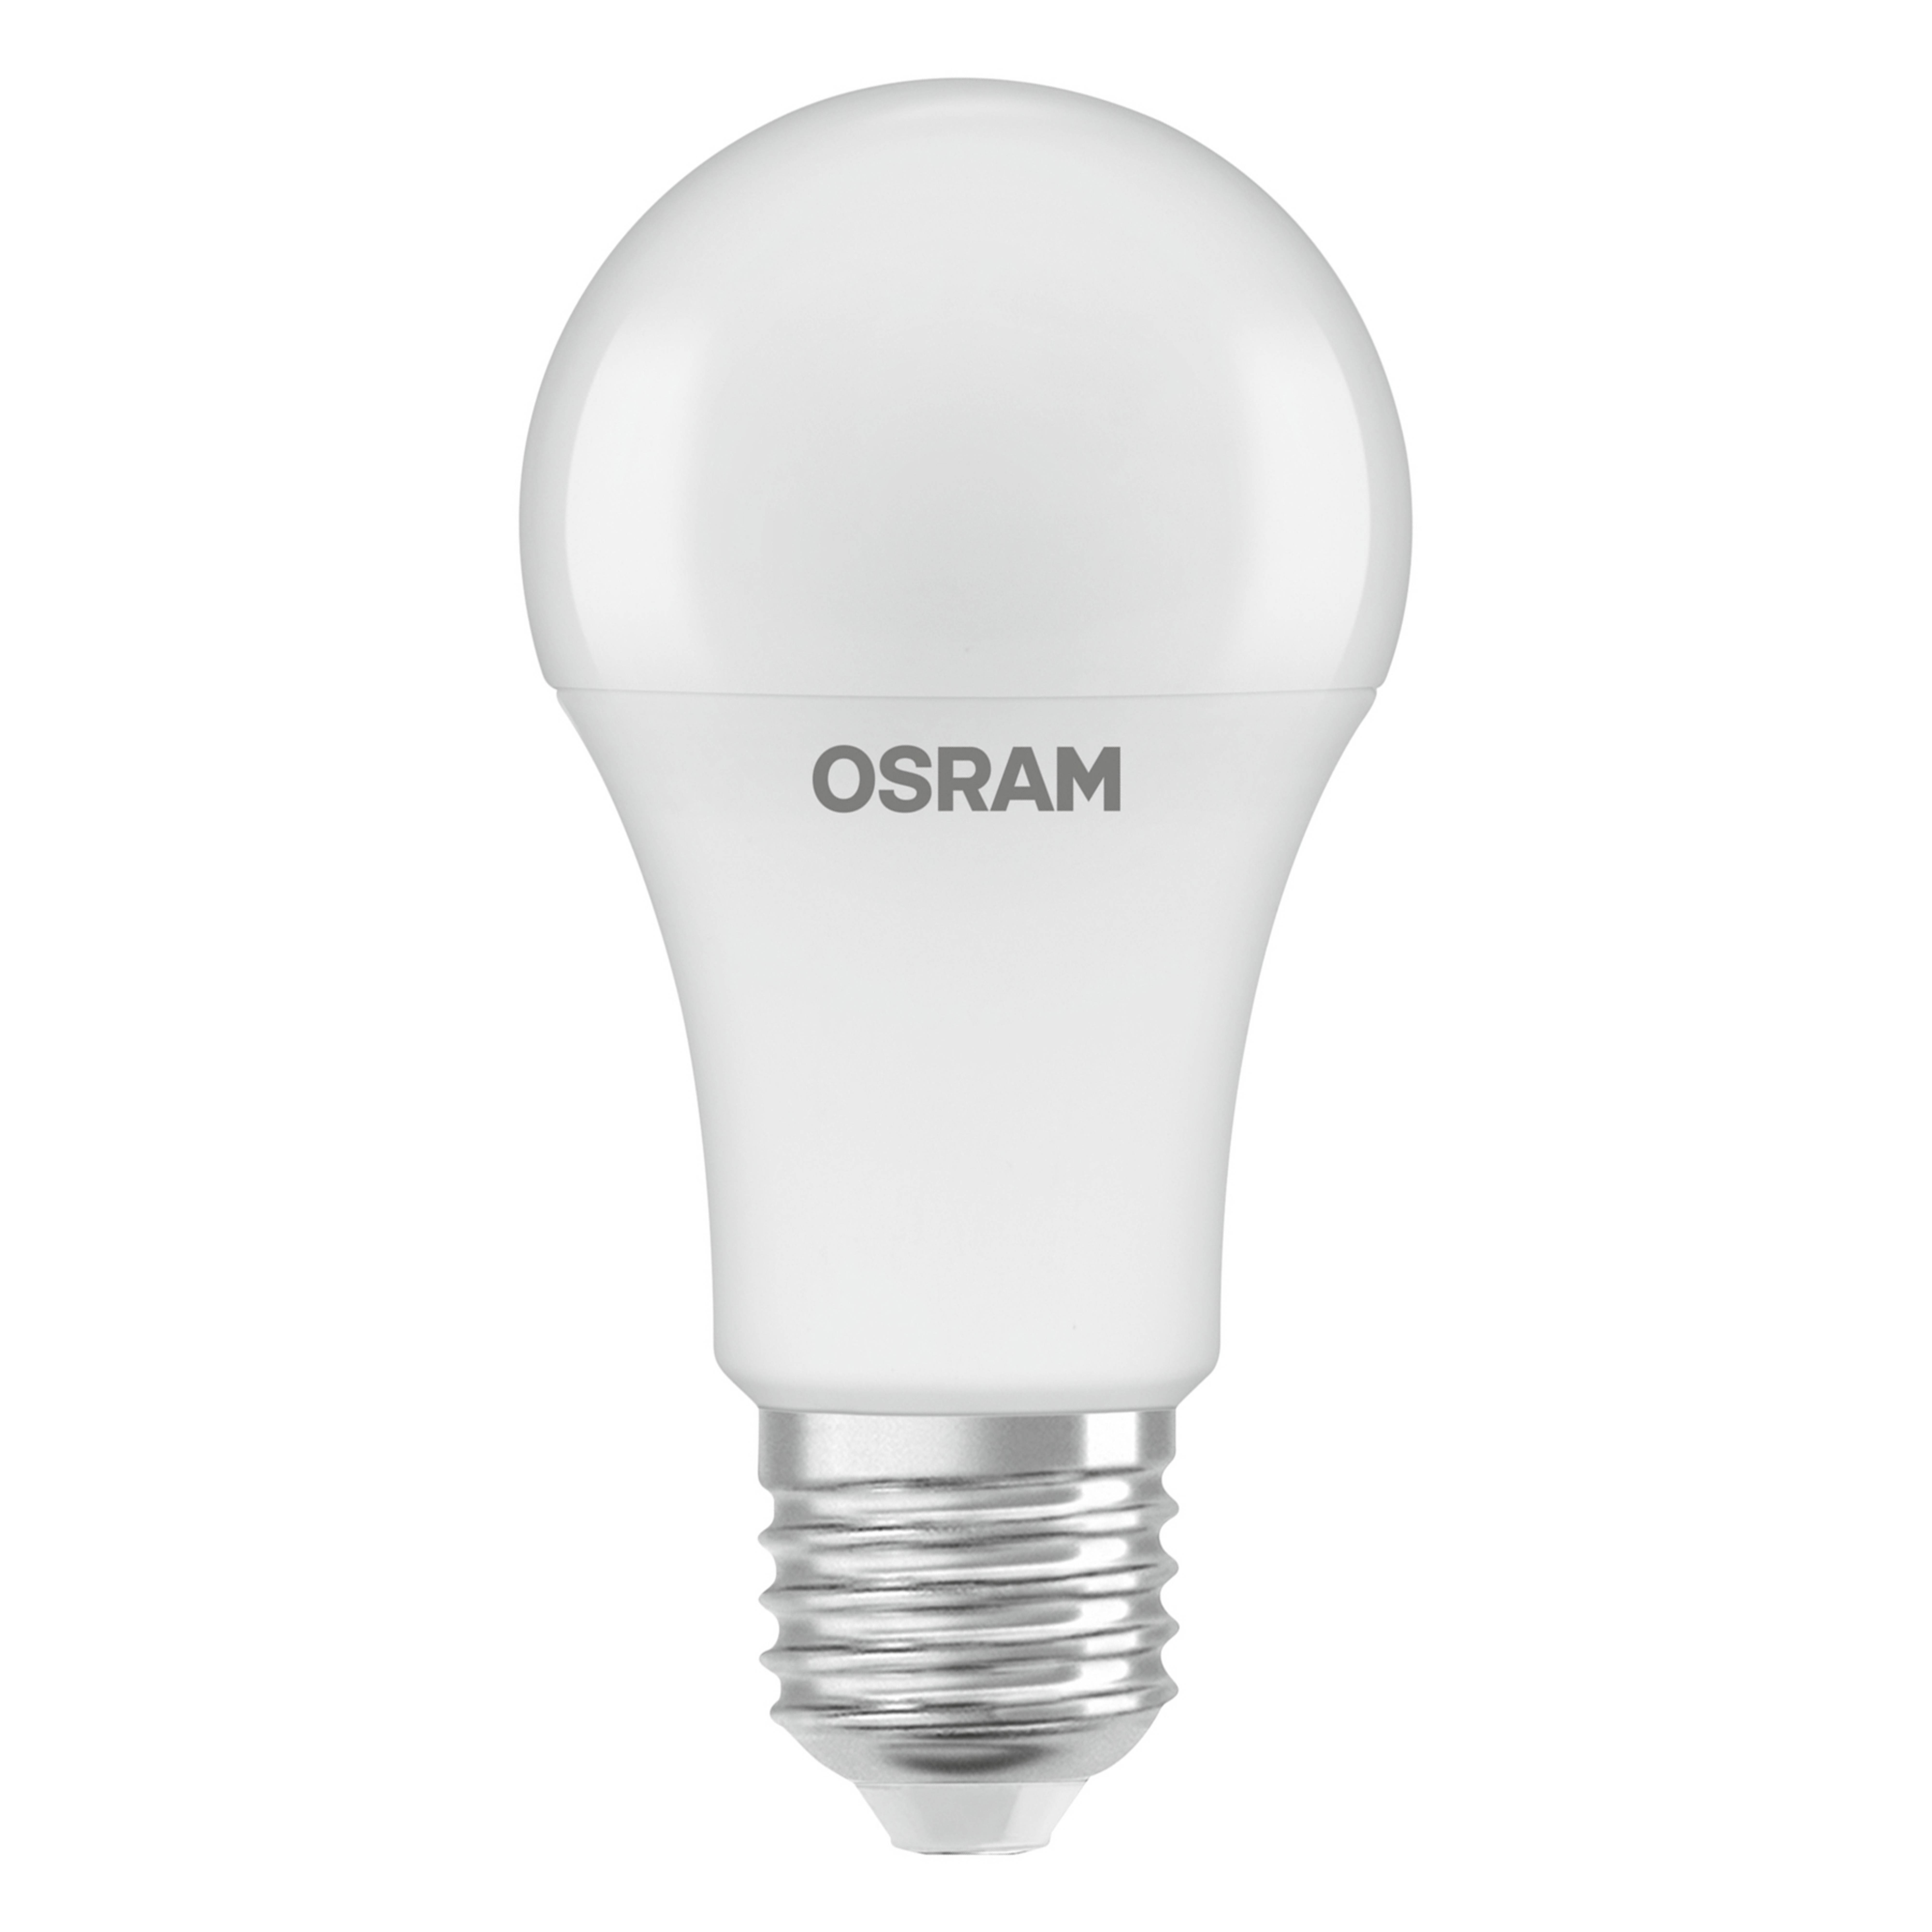 OSRAM bombilla LED E27 8,8W 827 sensor luz diurna